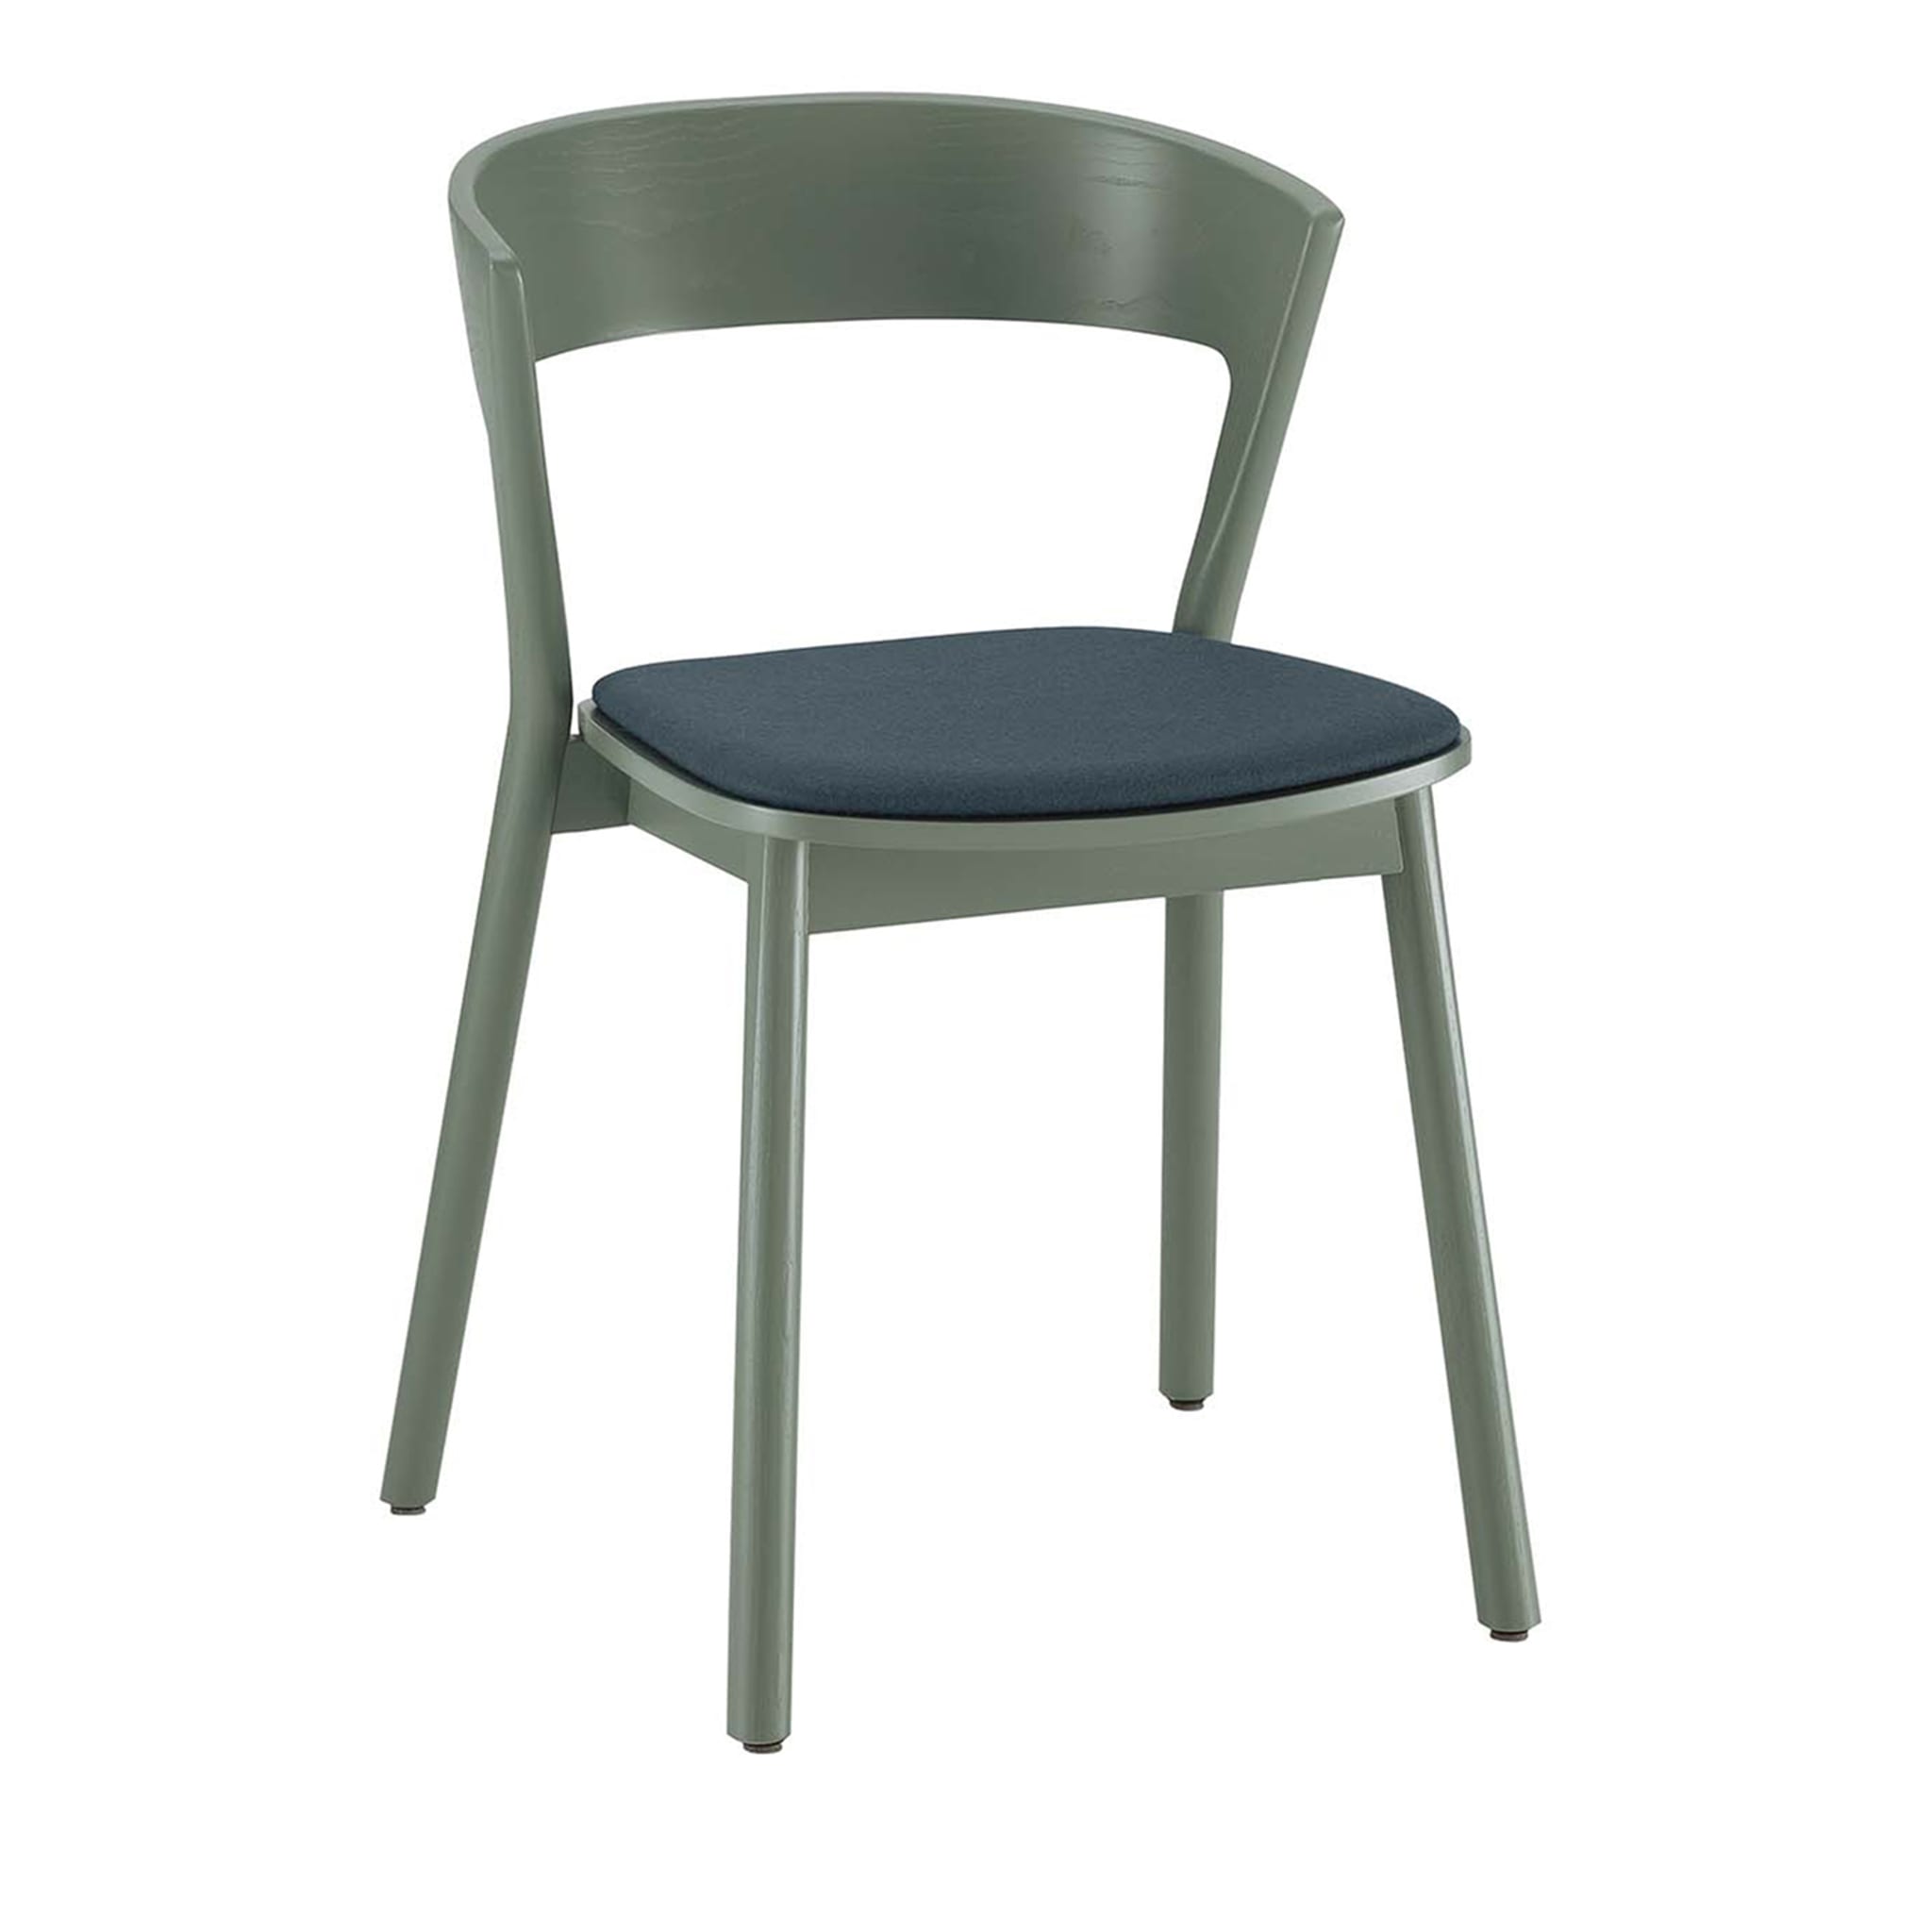 Edith Green Chair #1 von Massimo Broglio - Hauptansicht